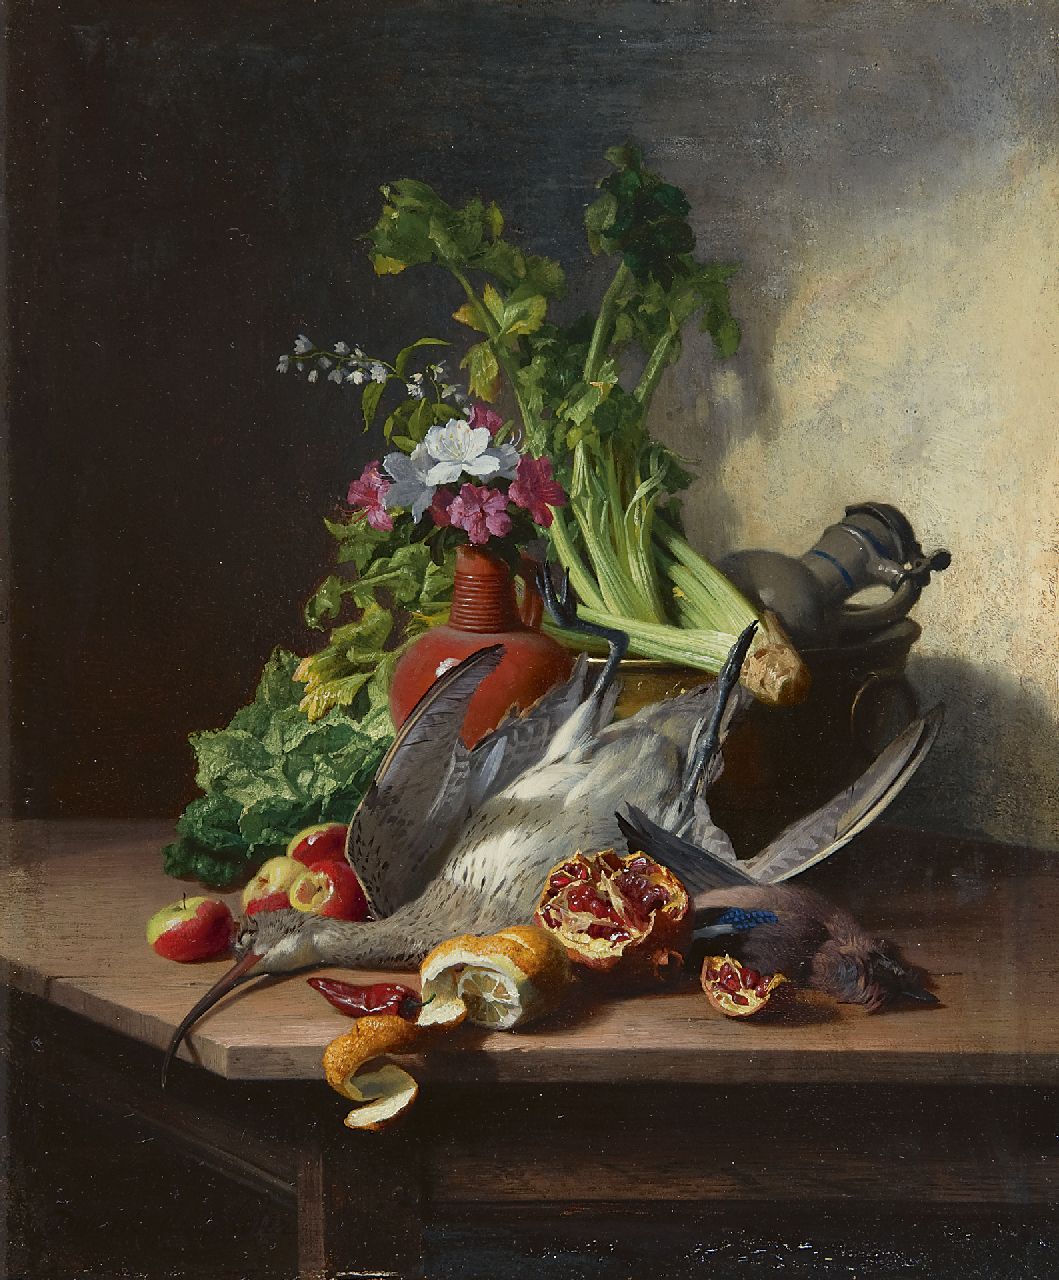 Noter D.E.J. de | 'David' Emile Joseph de Noter, Stilleven met houtsnip, een Vlaamse gaai, groente, fruit, bloemen en aardewerken kruiken, olieverf op paneel 32,3 x 27,2 cm, gesigneerd linksonder